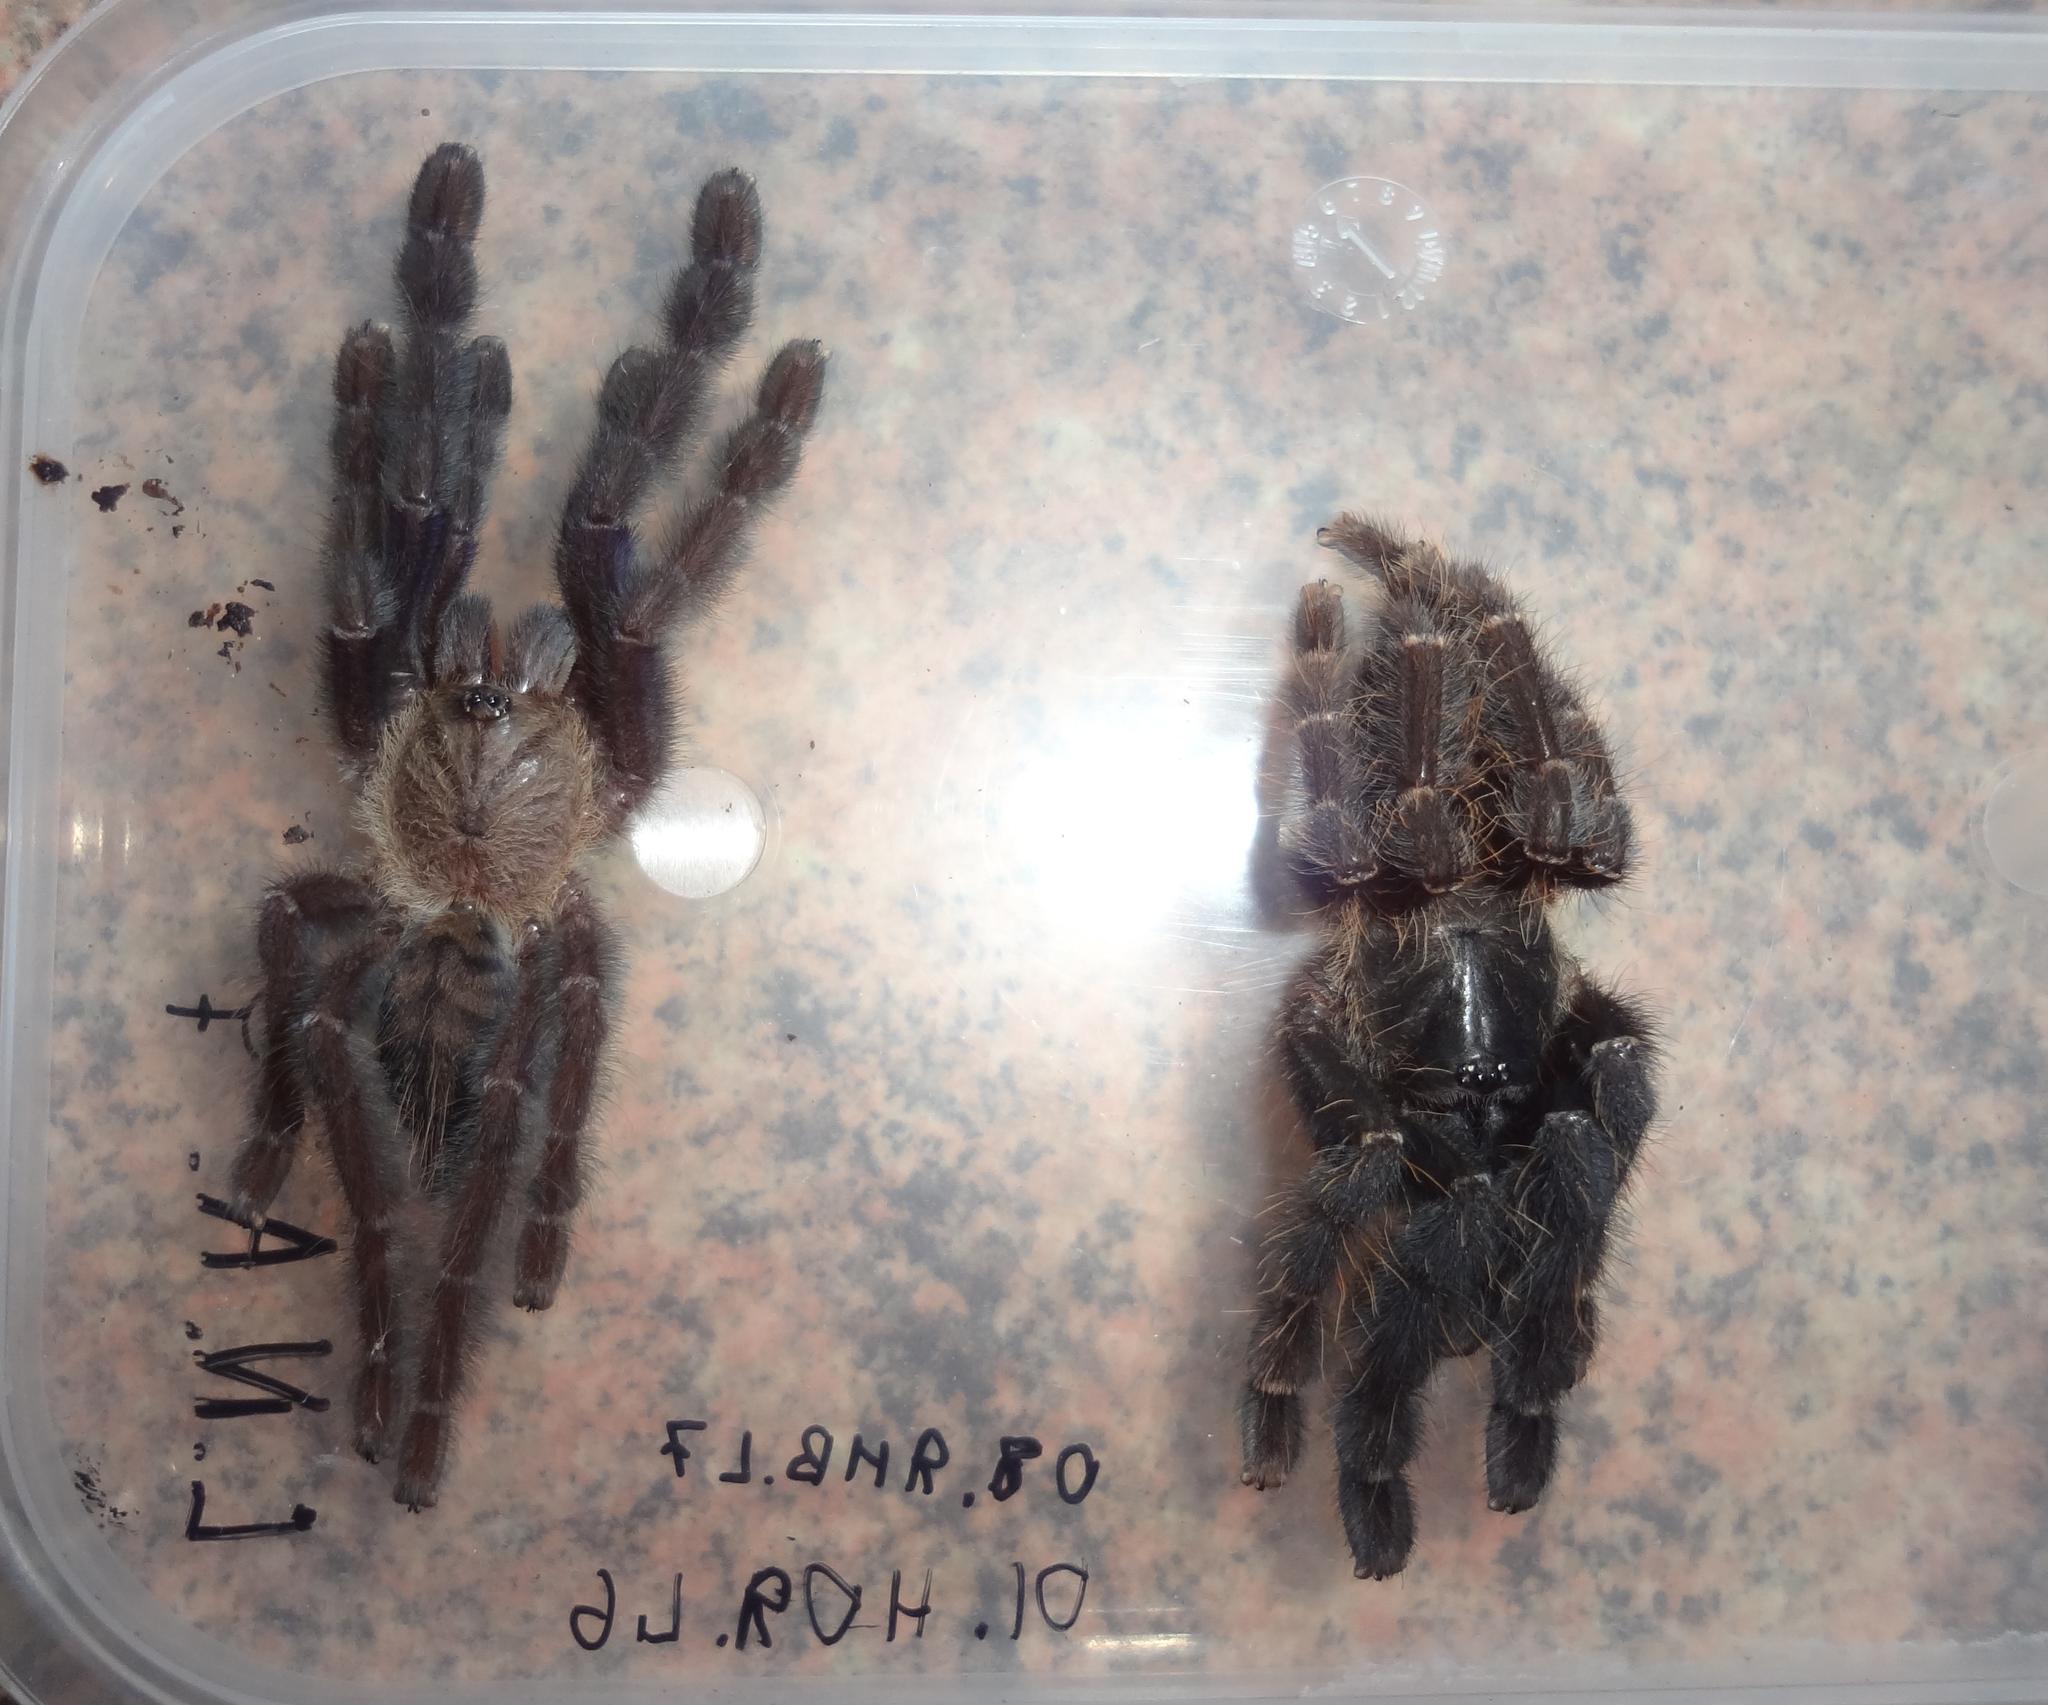 Lampropelma nigerrimum (Simon, 1892) ♀ .
Lampropelma nigerrimum arboricola (ex. Borneo black) (Schmidt & Barensteiner, 2015) ♀ .